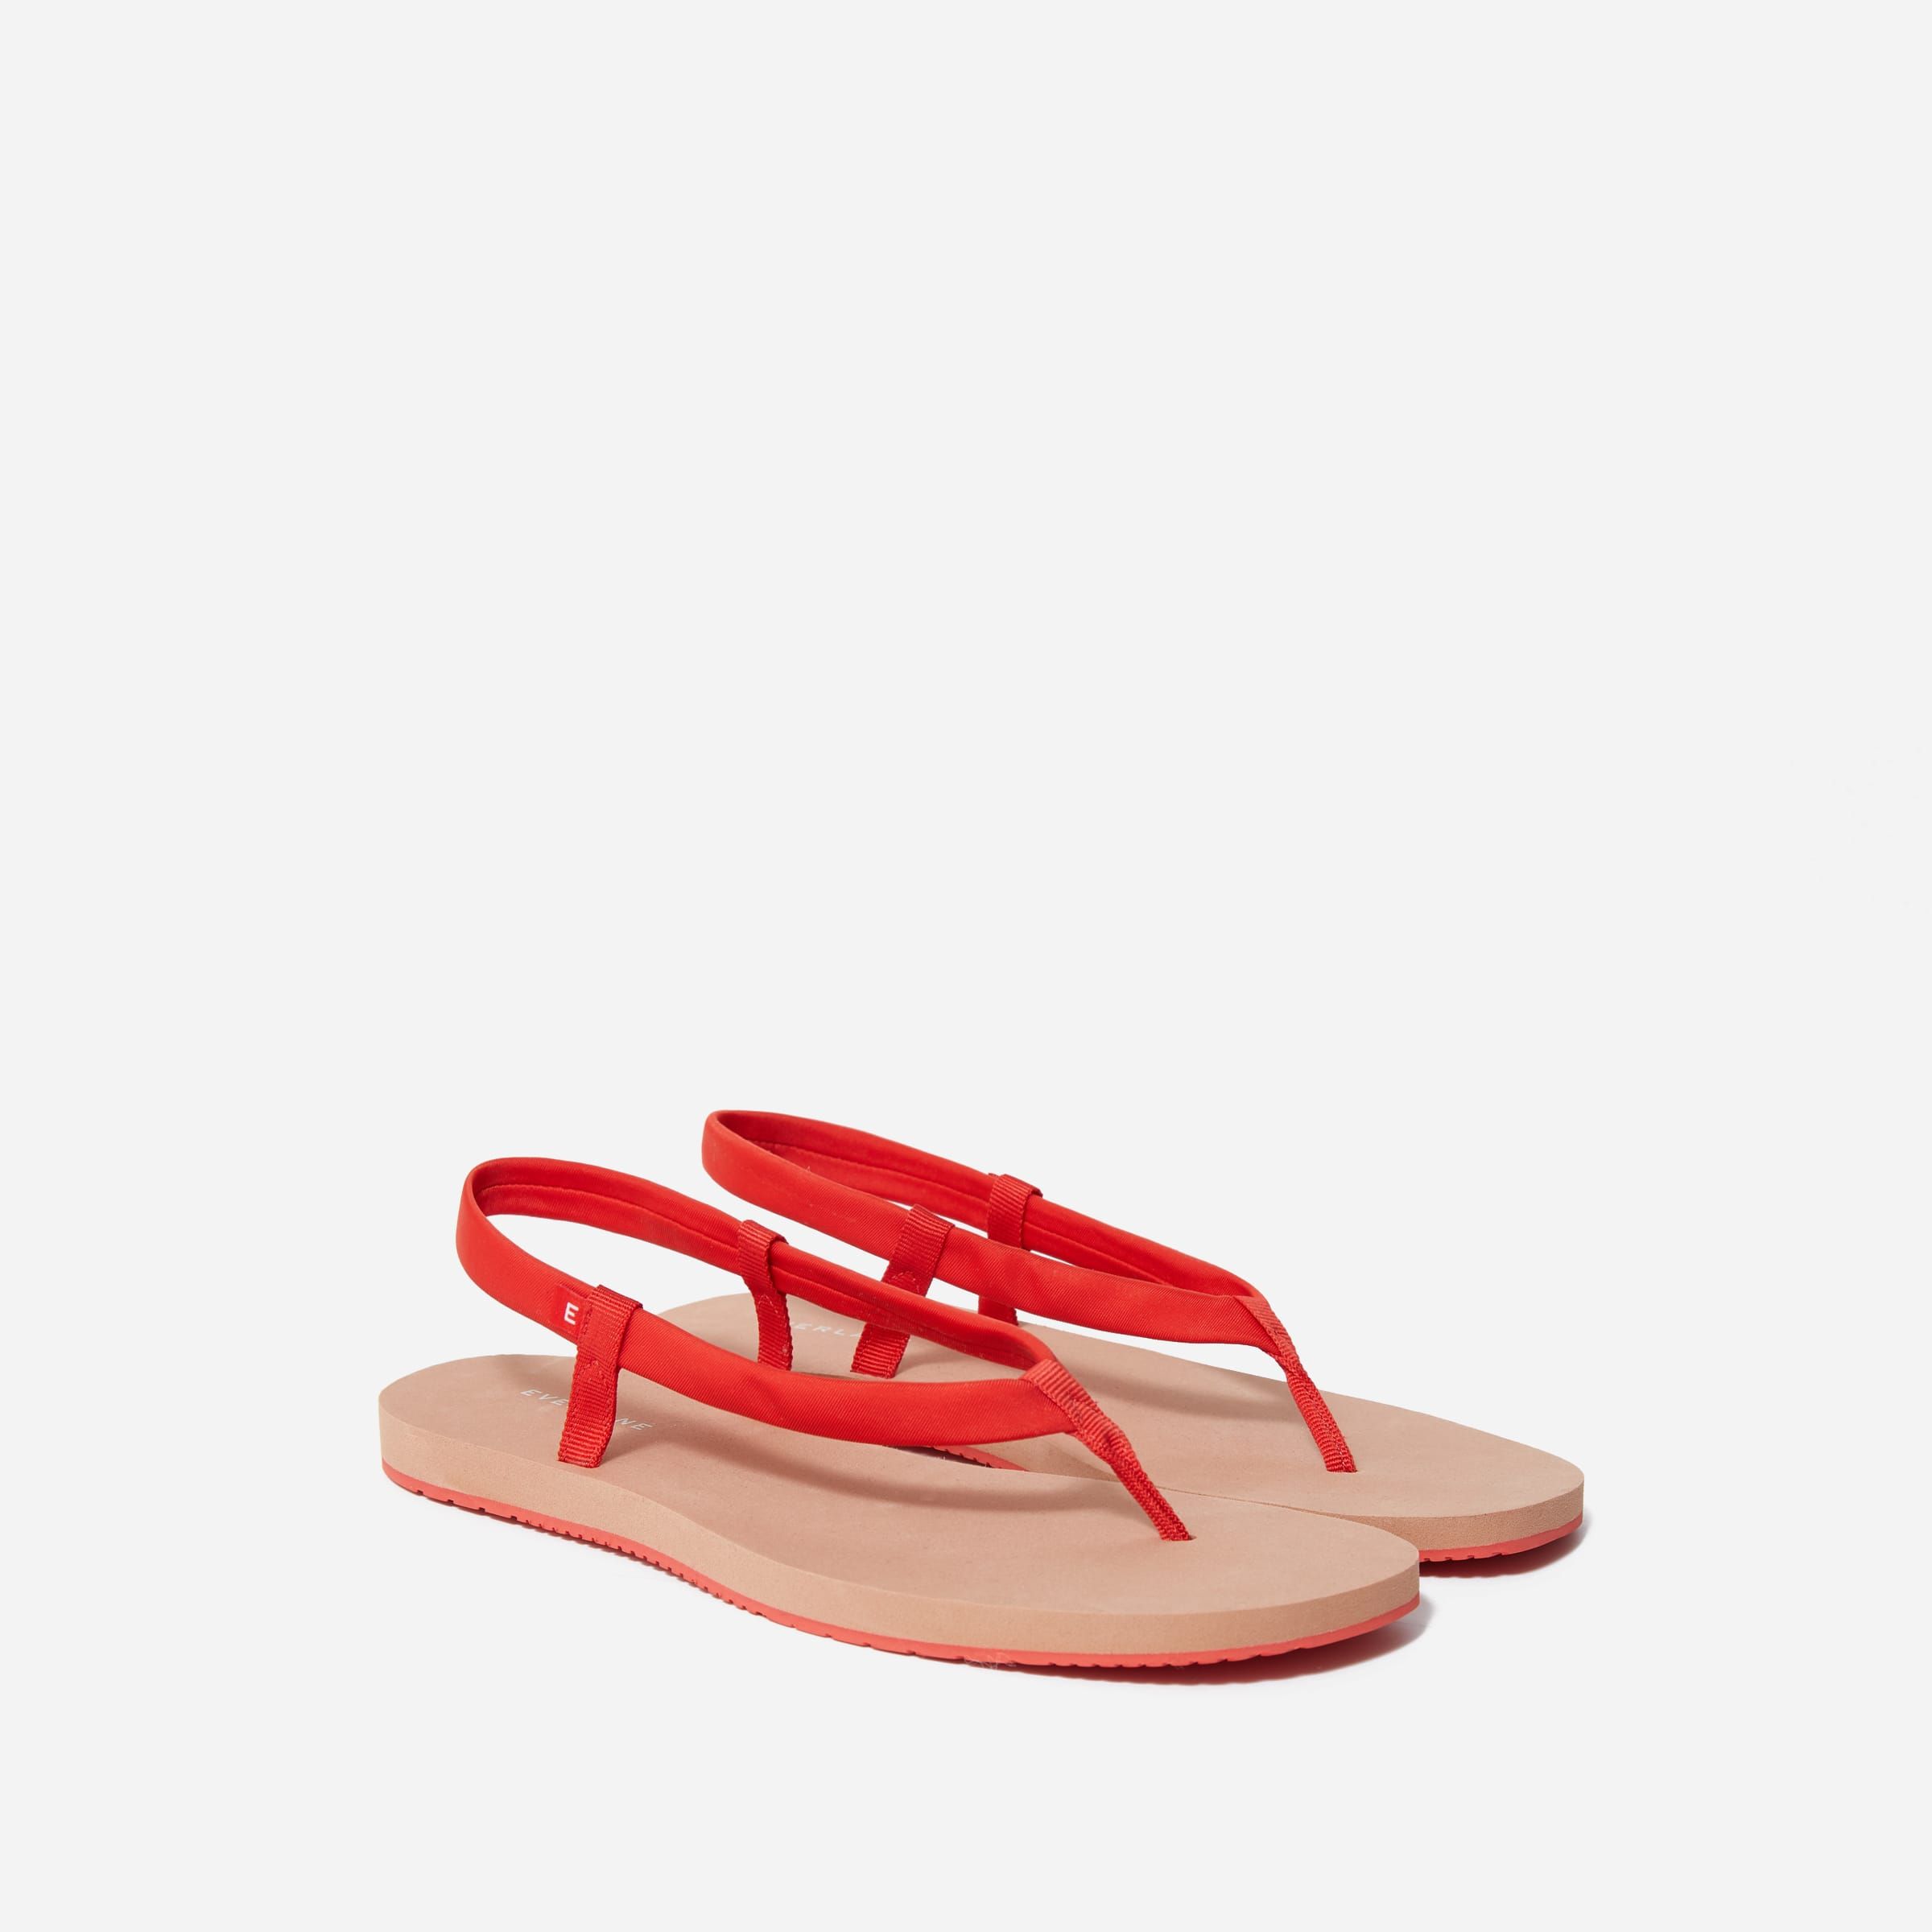 YUANKONG Comfort Flip Flops for Women Classic Sandals for Summer Beach